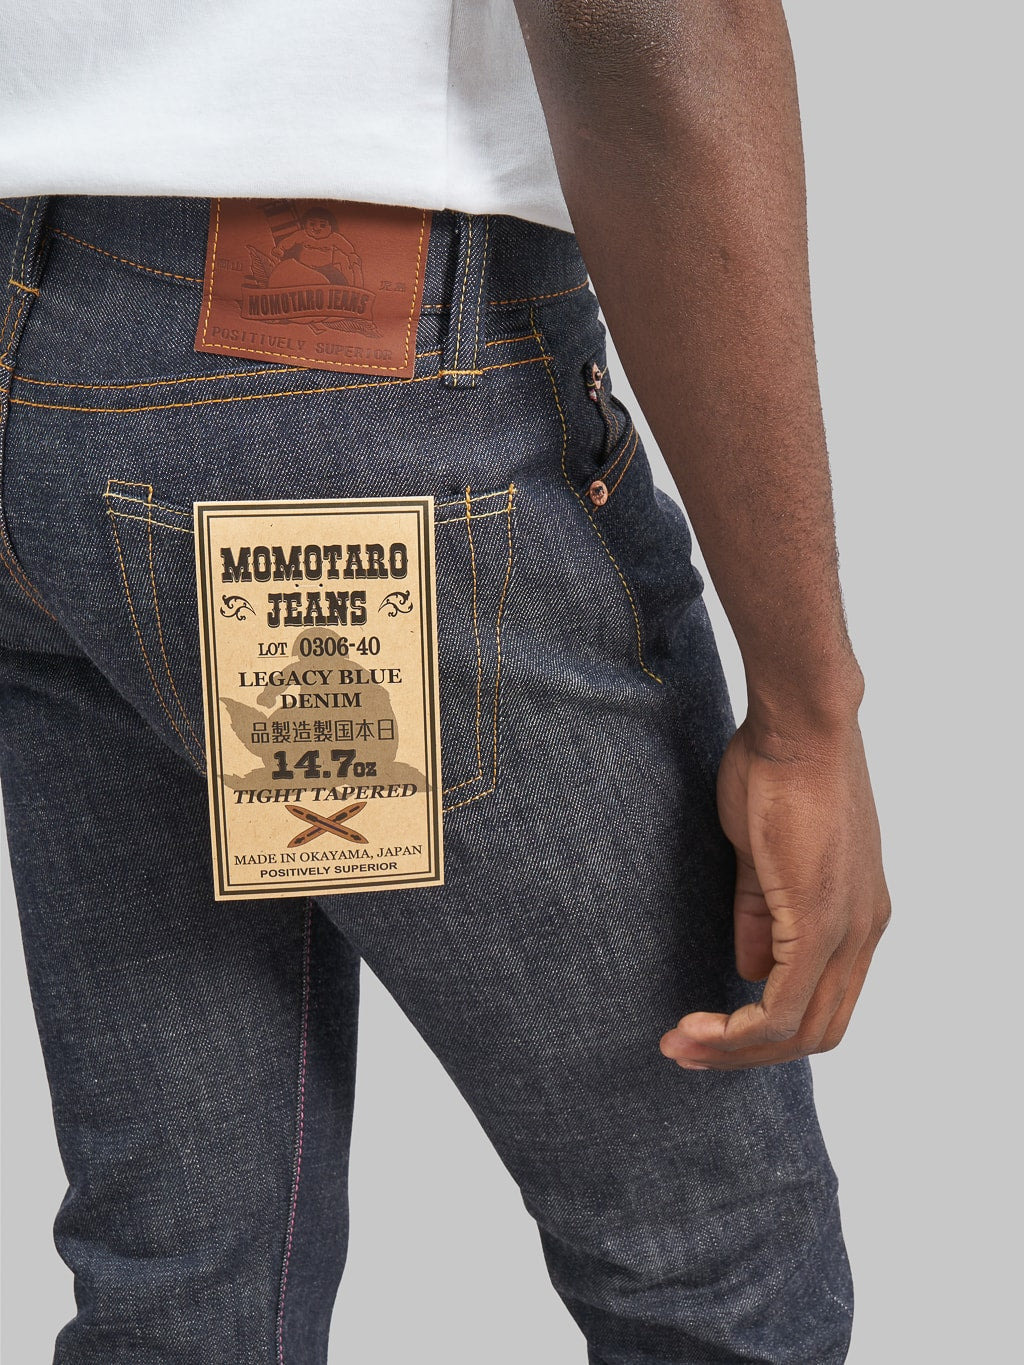 Momotaro 0306 40 Legacy Blue Tight Tapered Jeans back pocket details